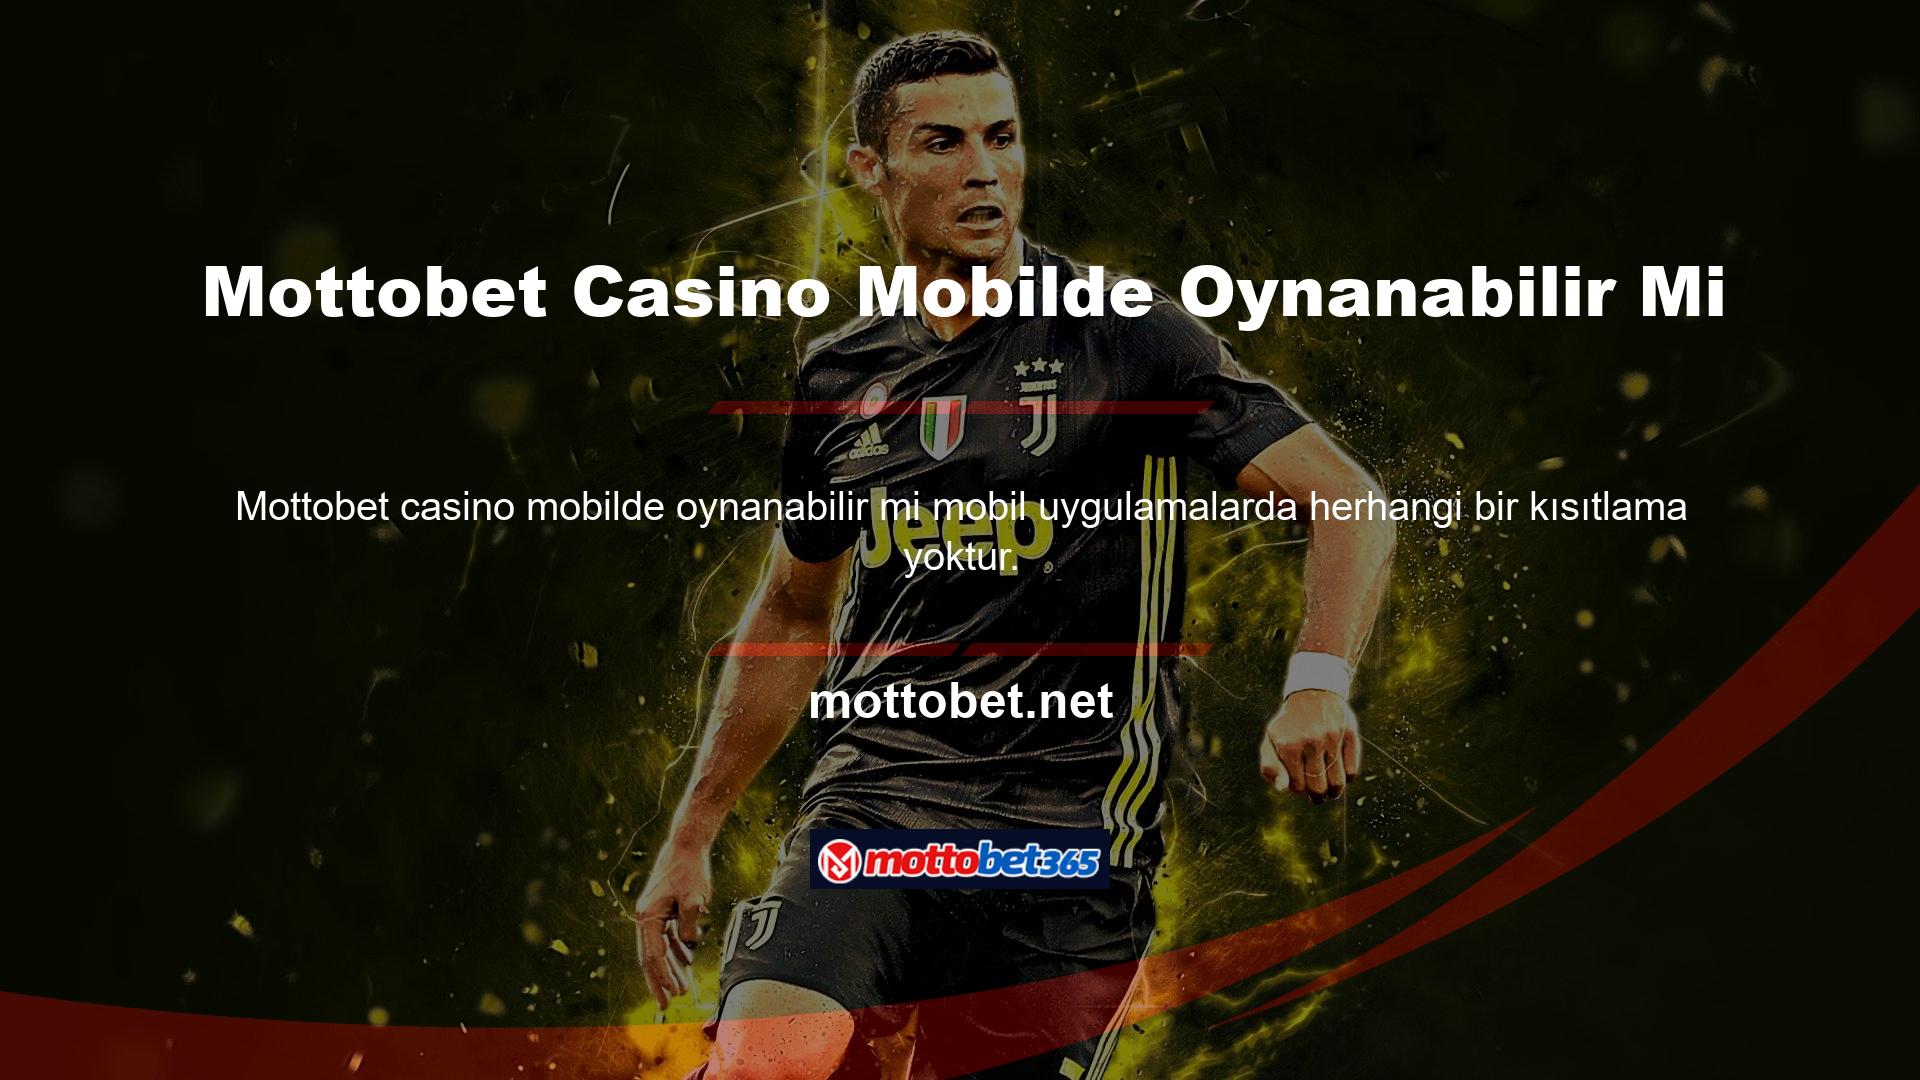 Mottobet Casino mobilde oynanabilir mi? Tabii ki, hareket halindeyken de tüm oyun kategorilerini kullanabilirsiniz